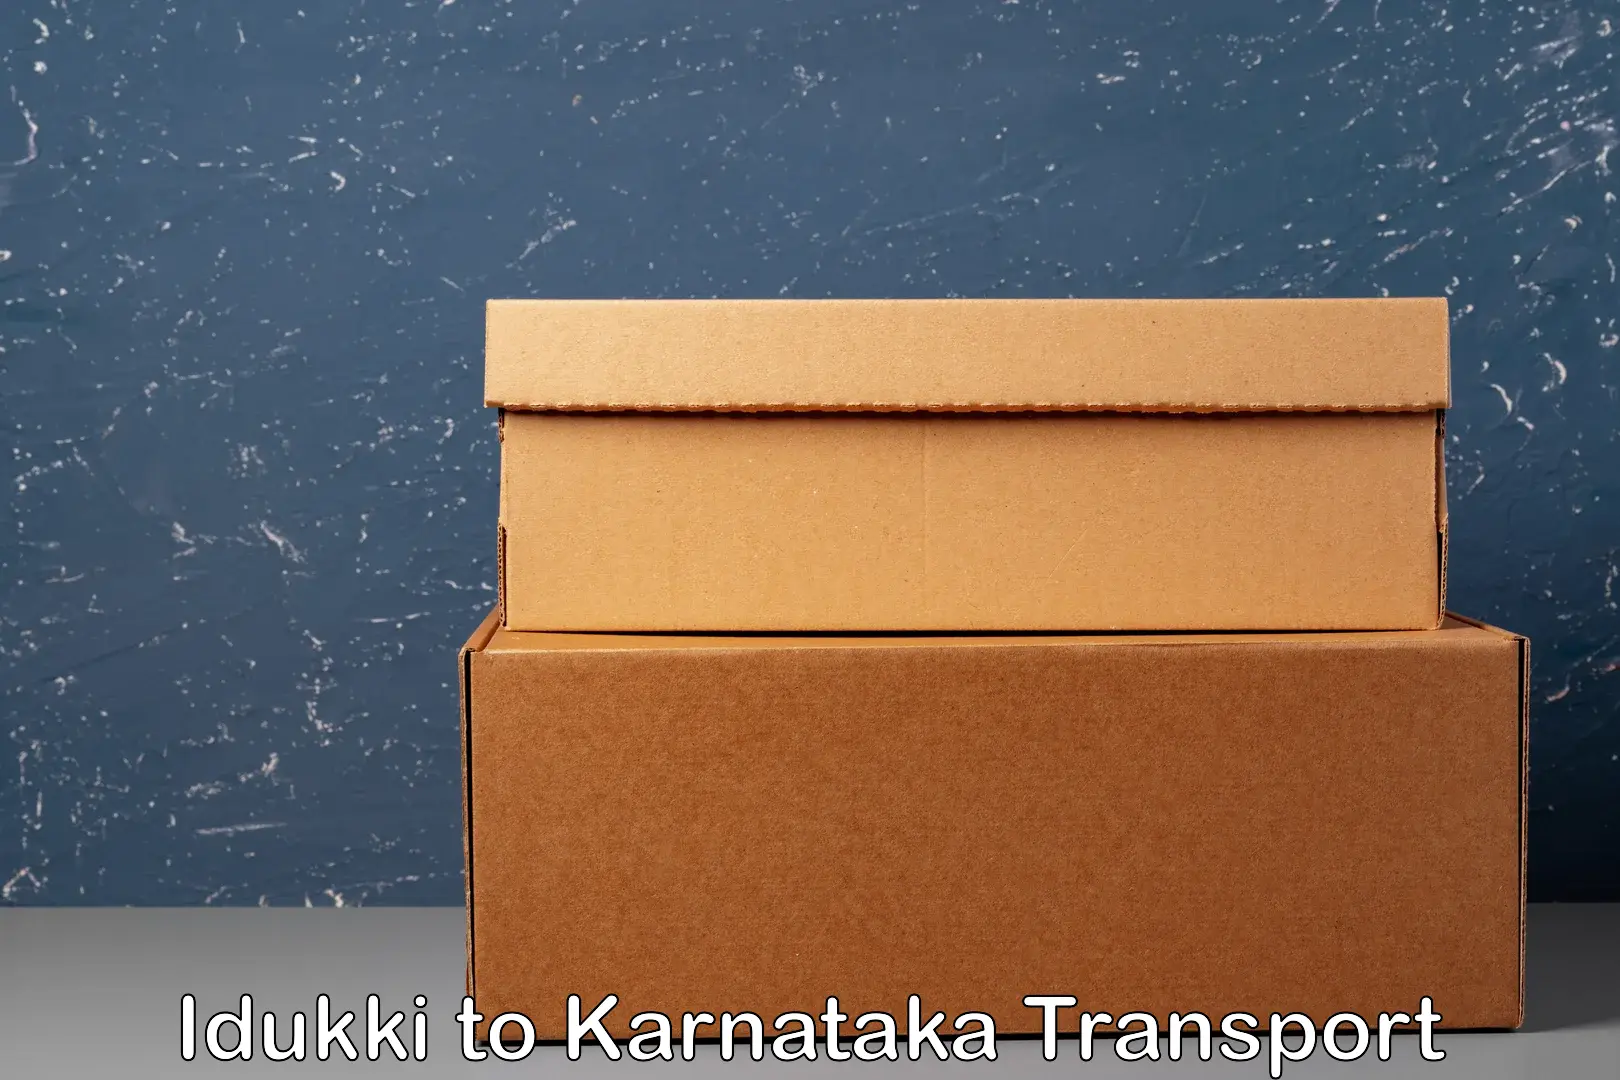 Two wheeler transport services Idukki to Karnataka